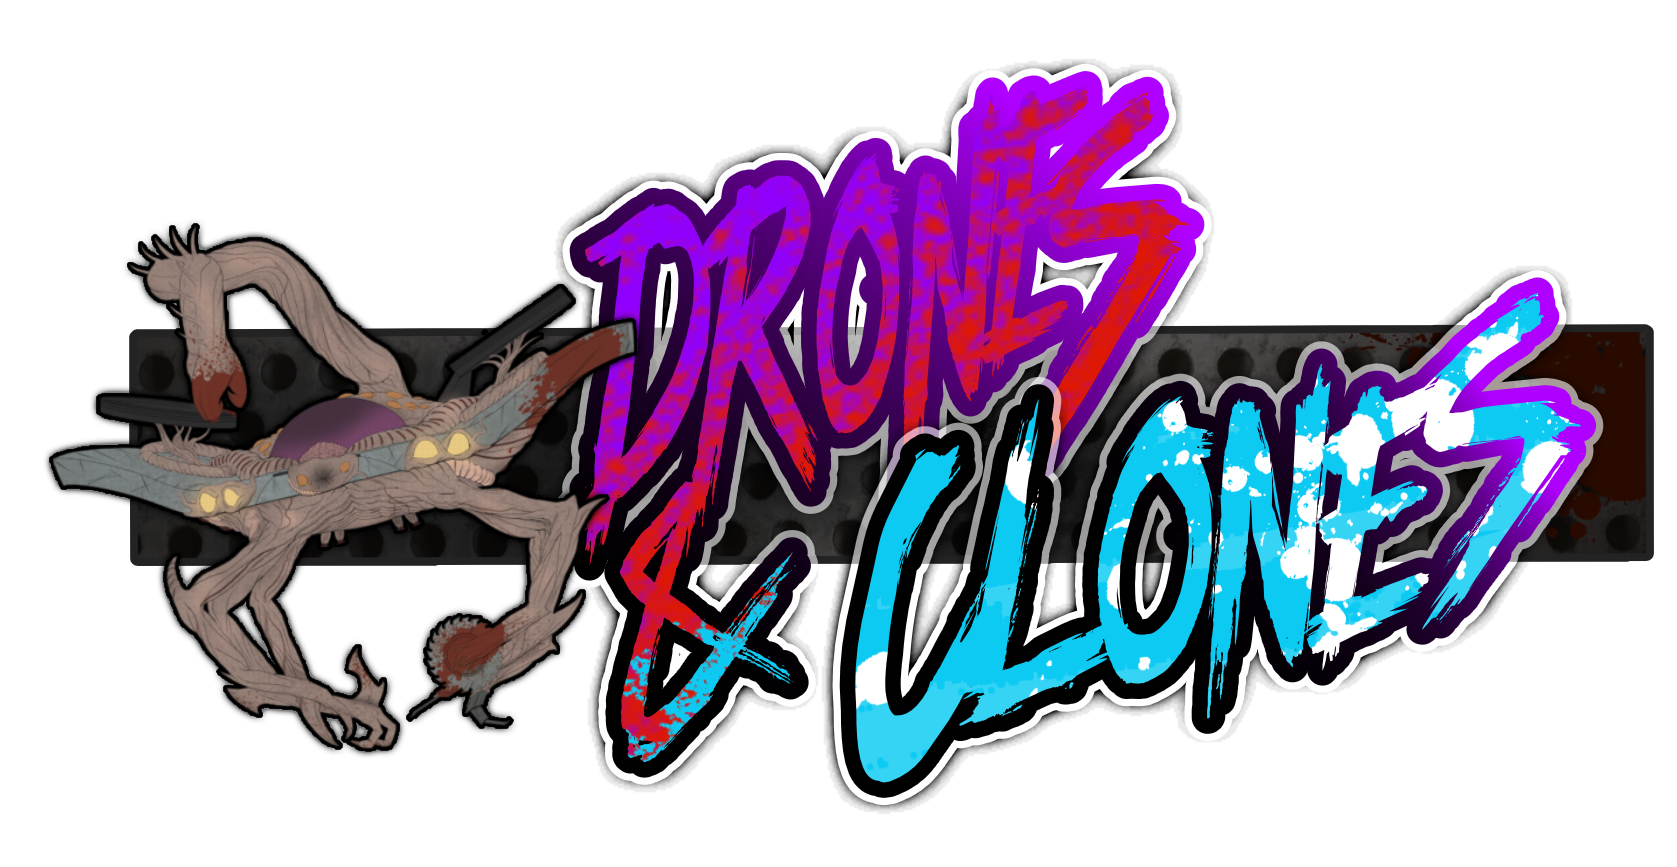 Header: Drones & Clones